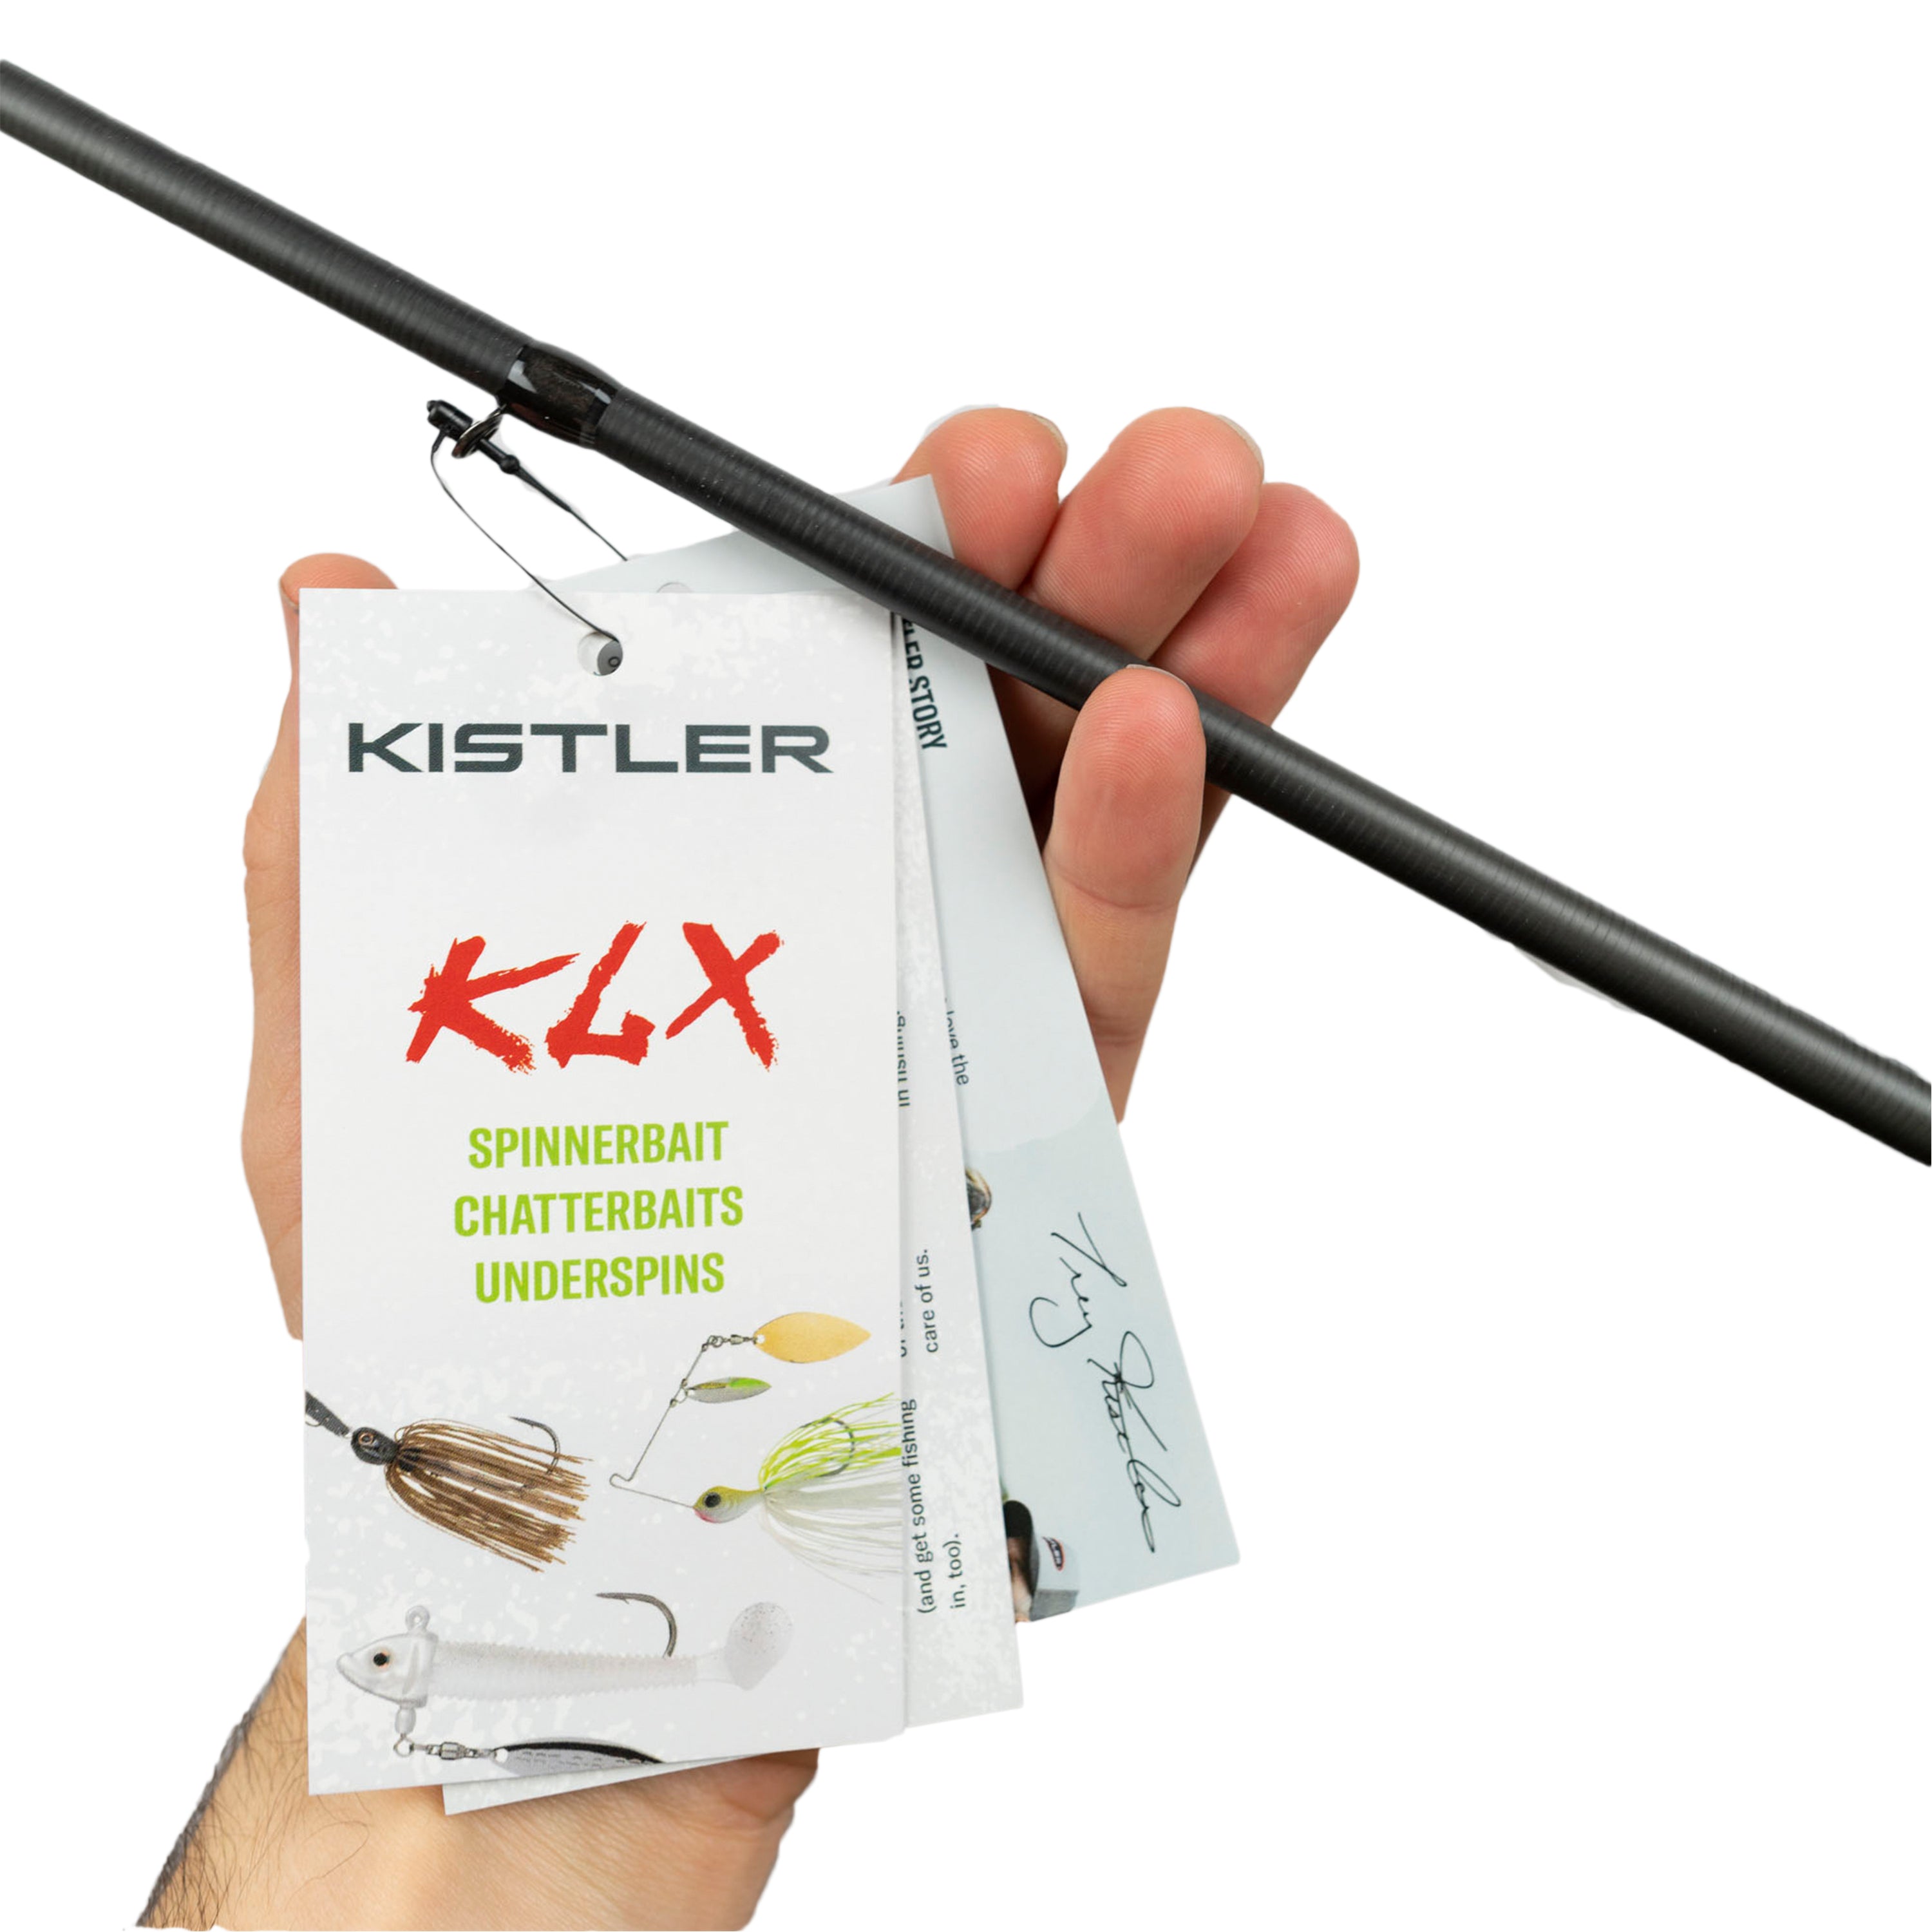 Kistler KLX-WSF-70LMH KLX 7'0 Lite Medium Heavy Casting Rod Weightless Worm, Senko, Fluke